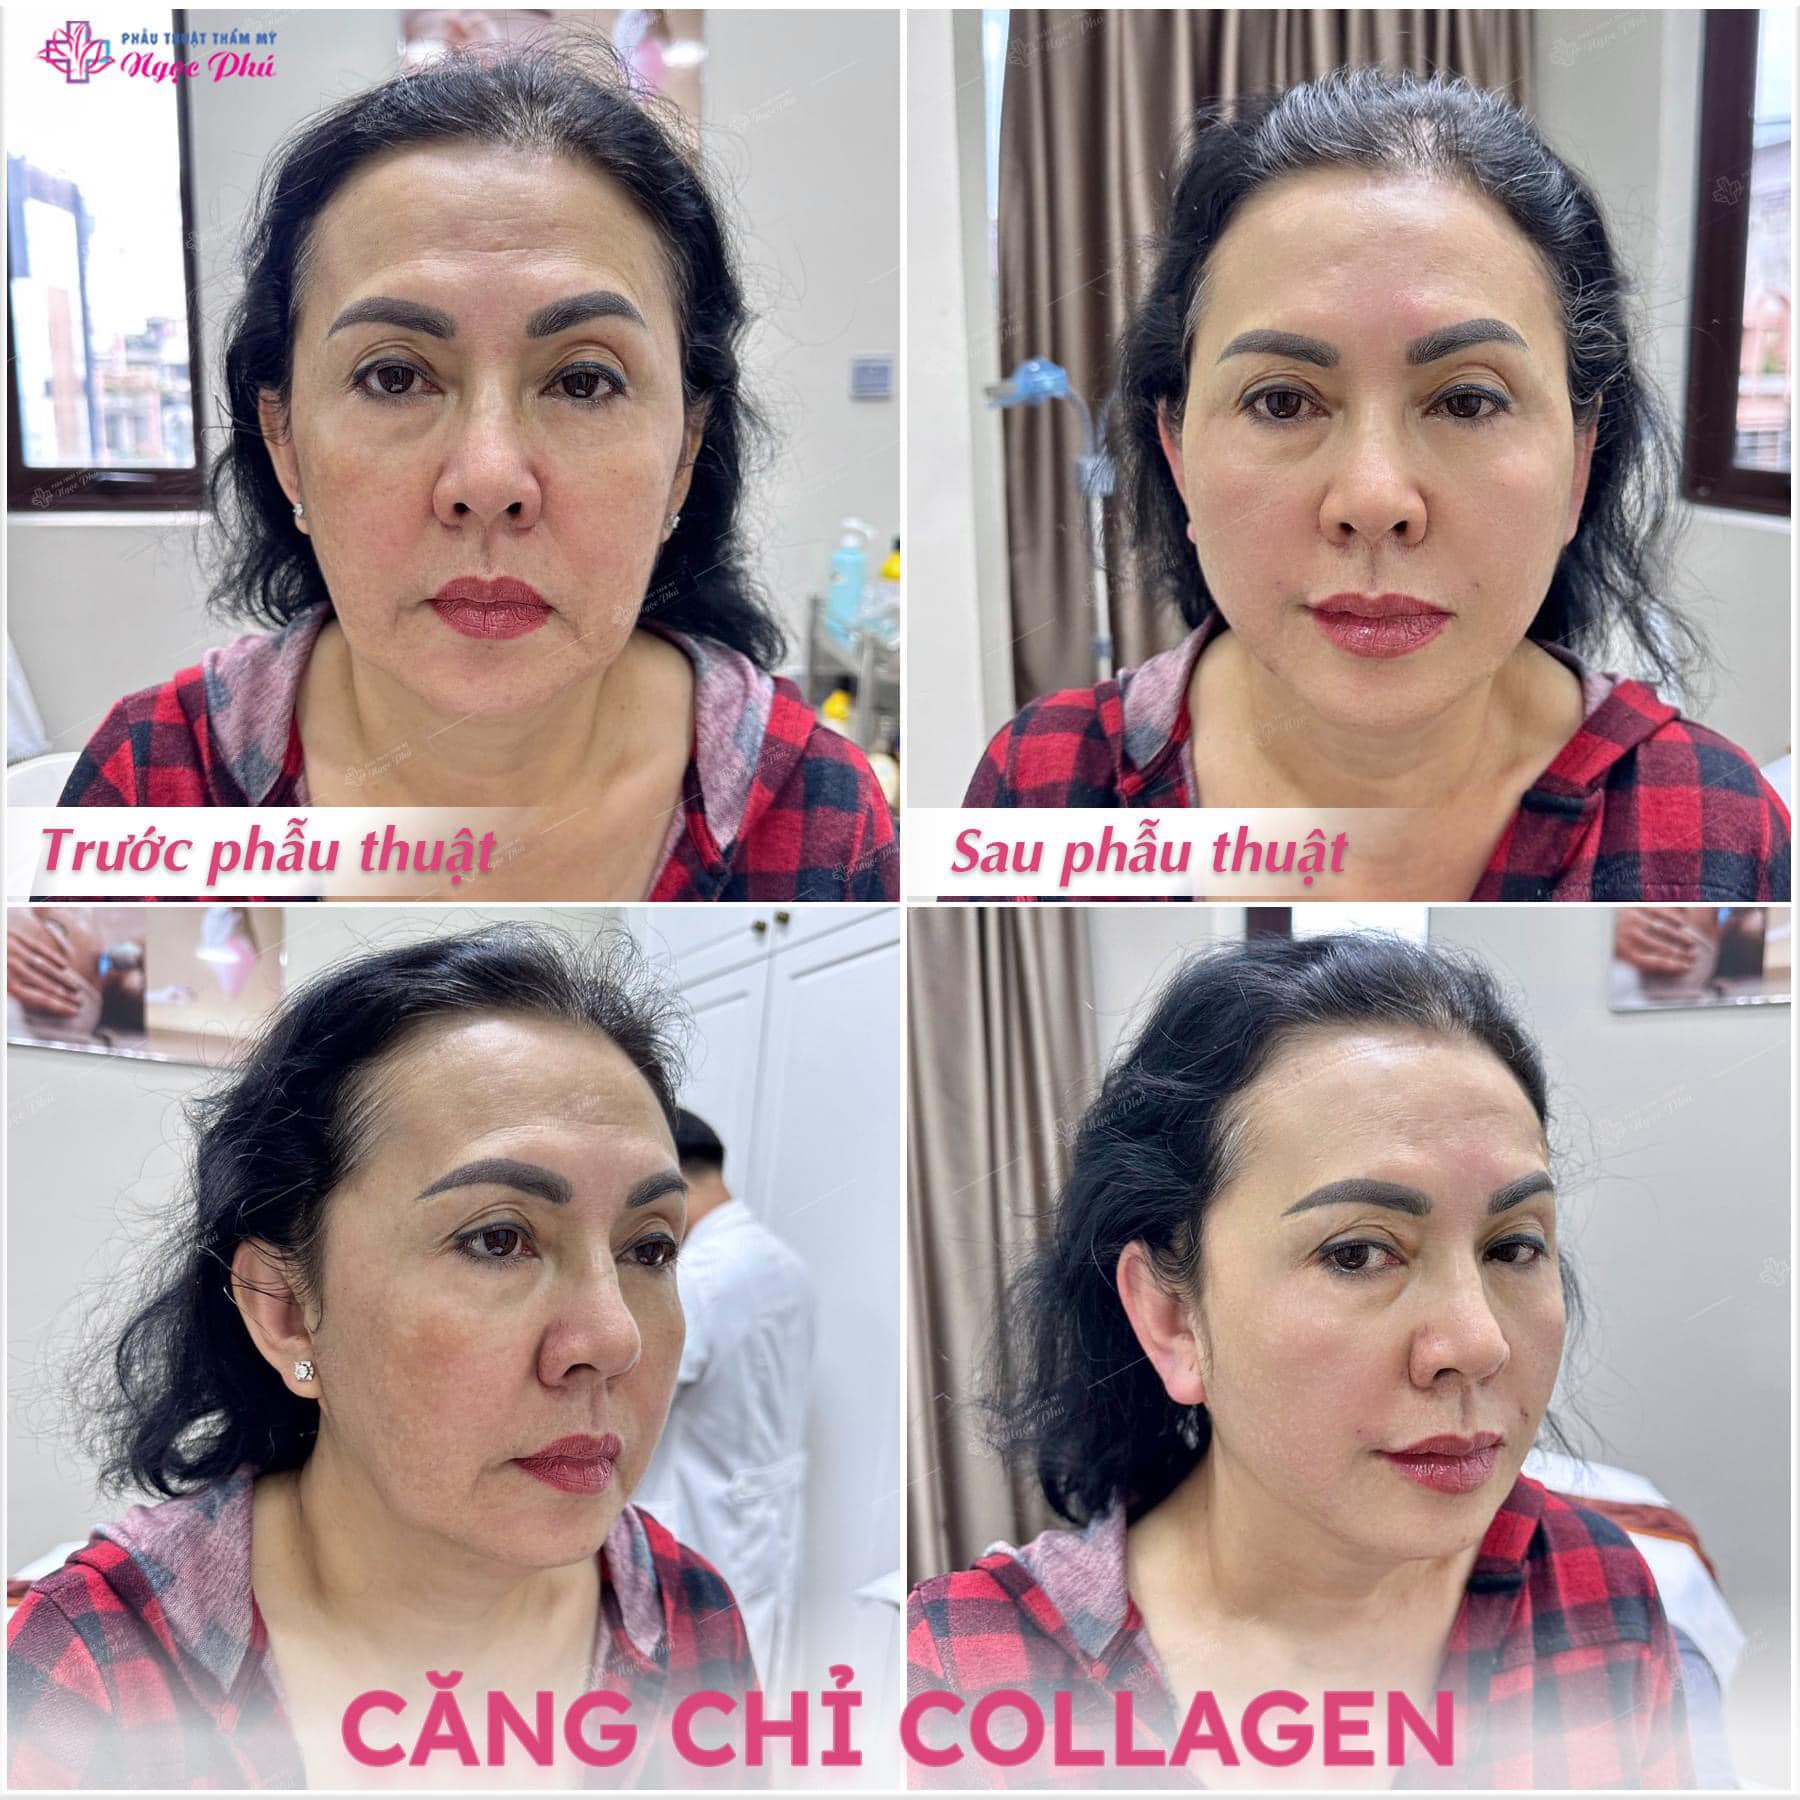 Căng chỉ Collagen là phương pháp trẻ hóa da hiệu quả và an toàn